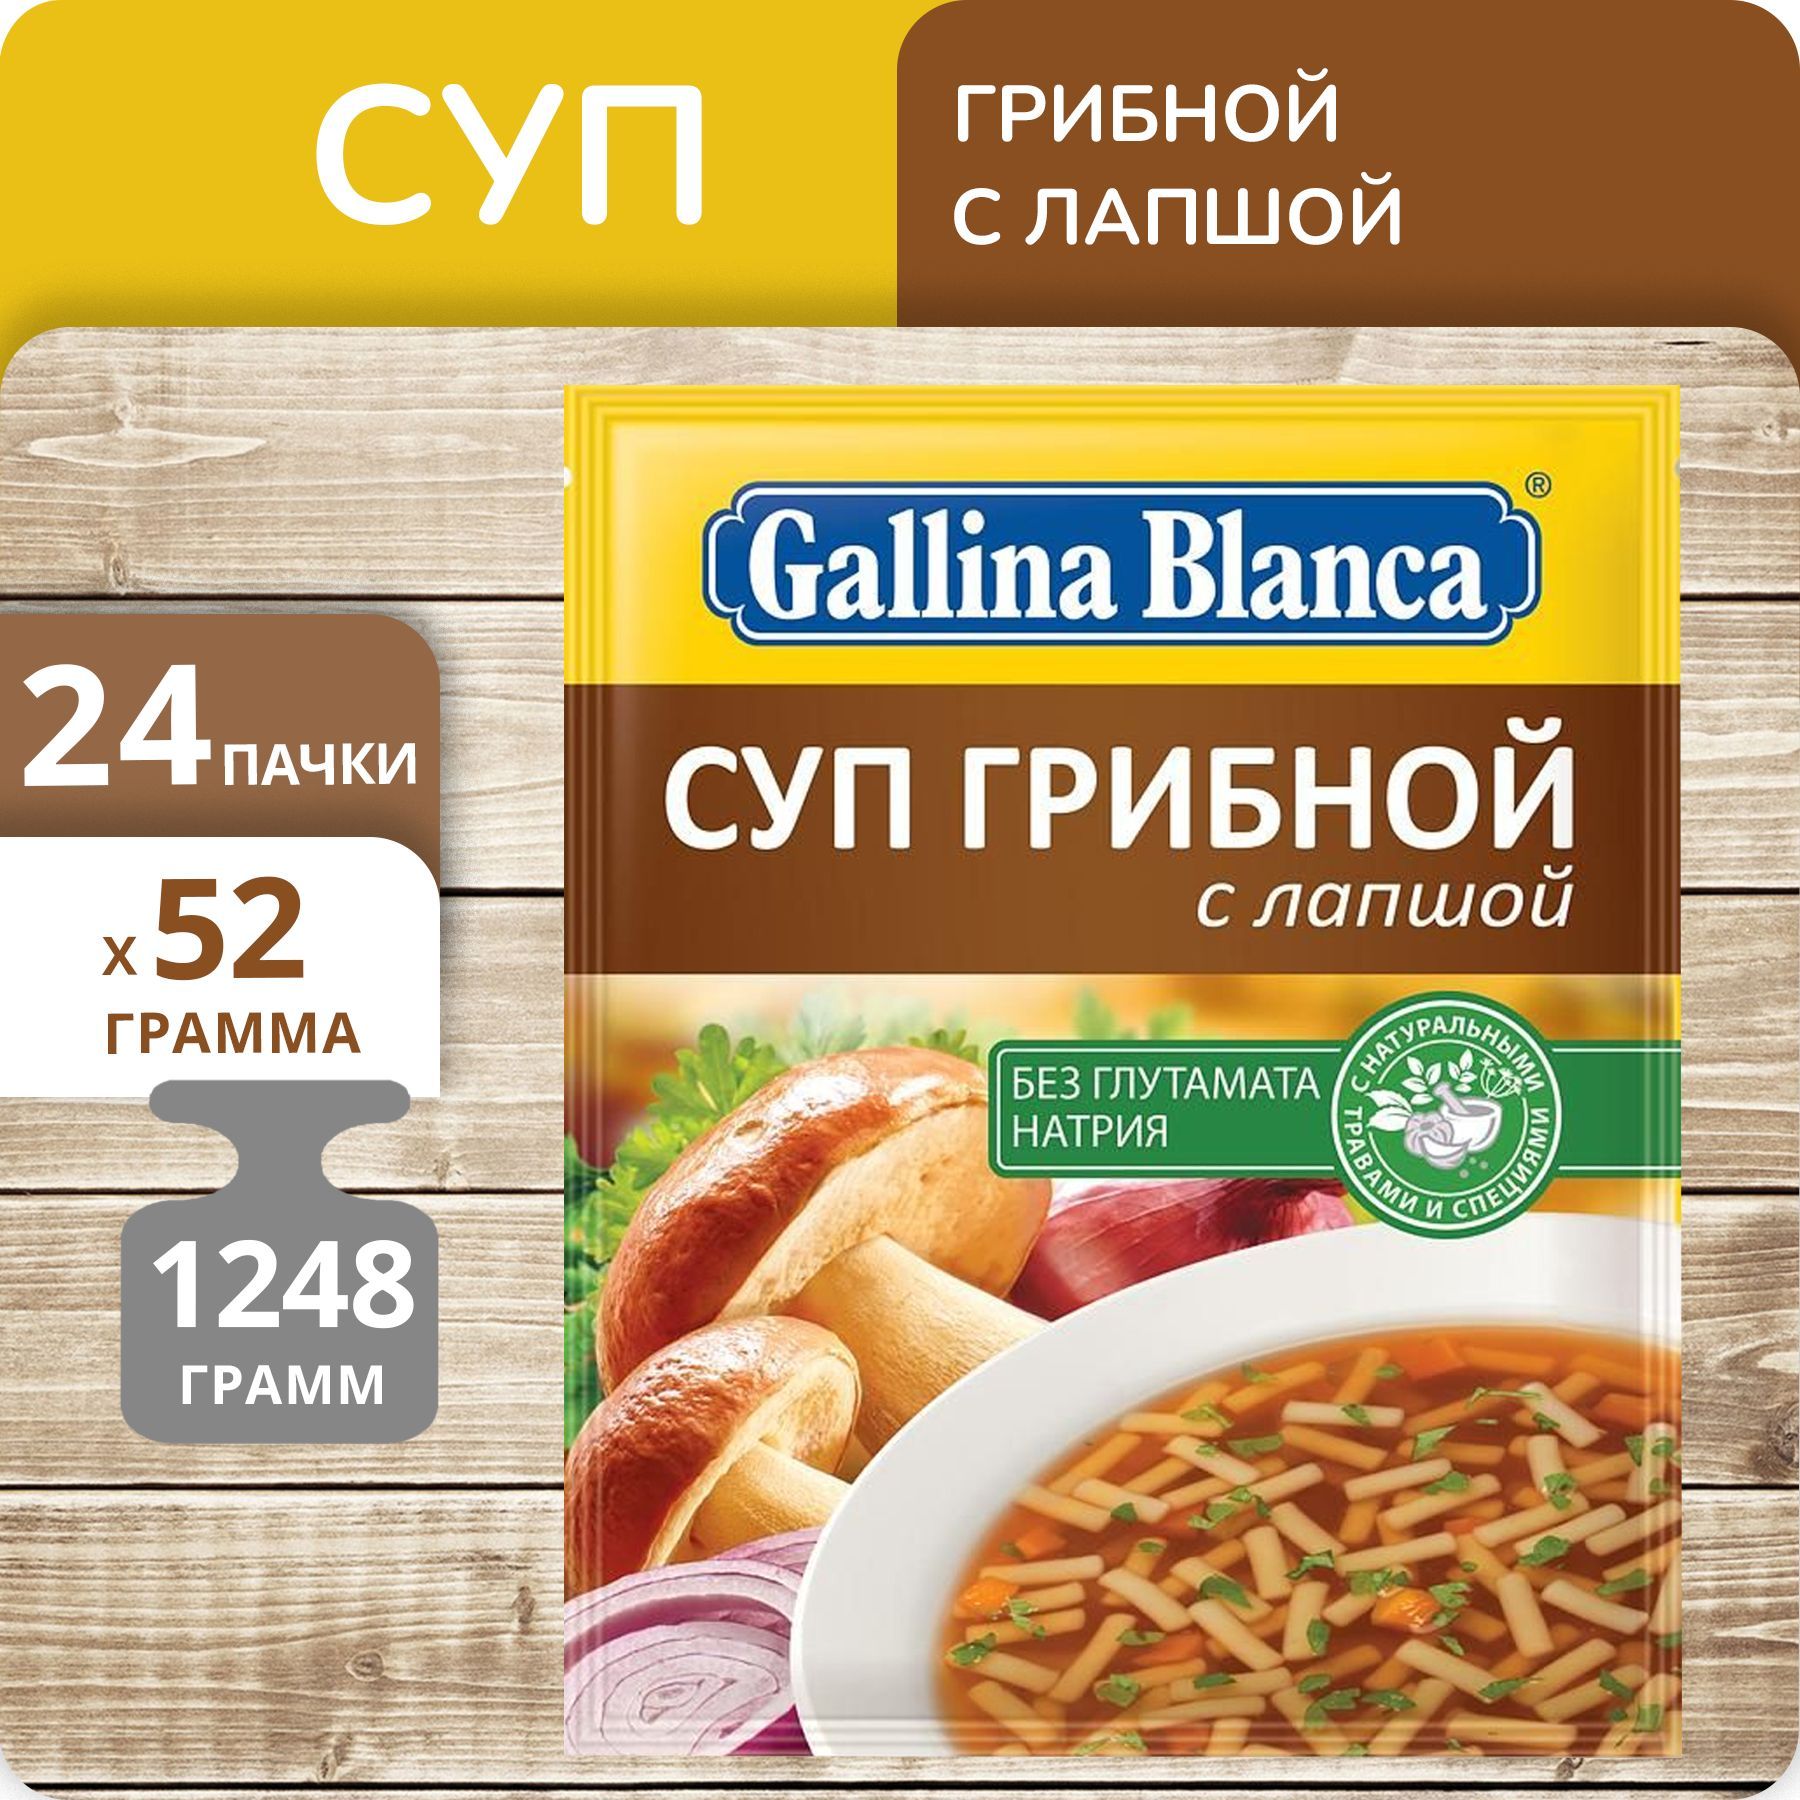 Суп Gallina Blanca Грибной с лапшой, 52 г х 24 шт